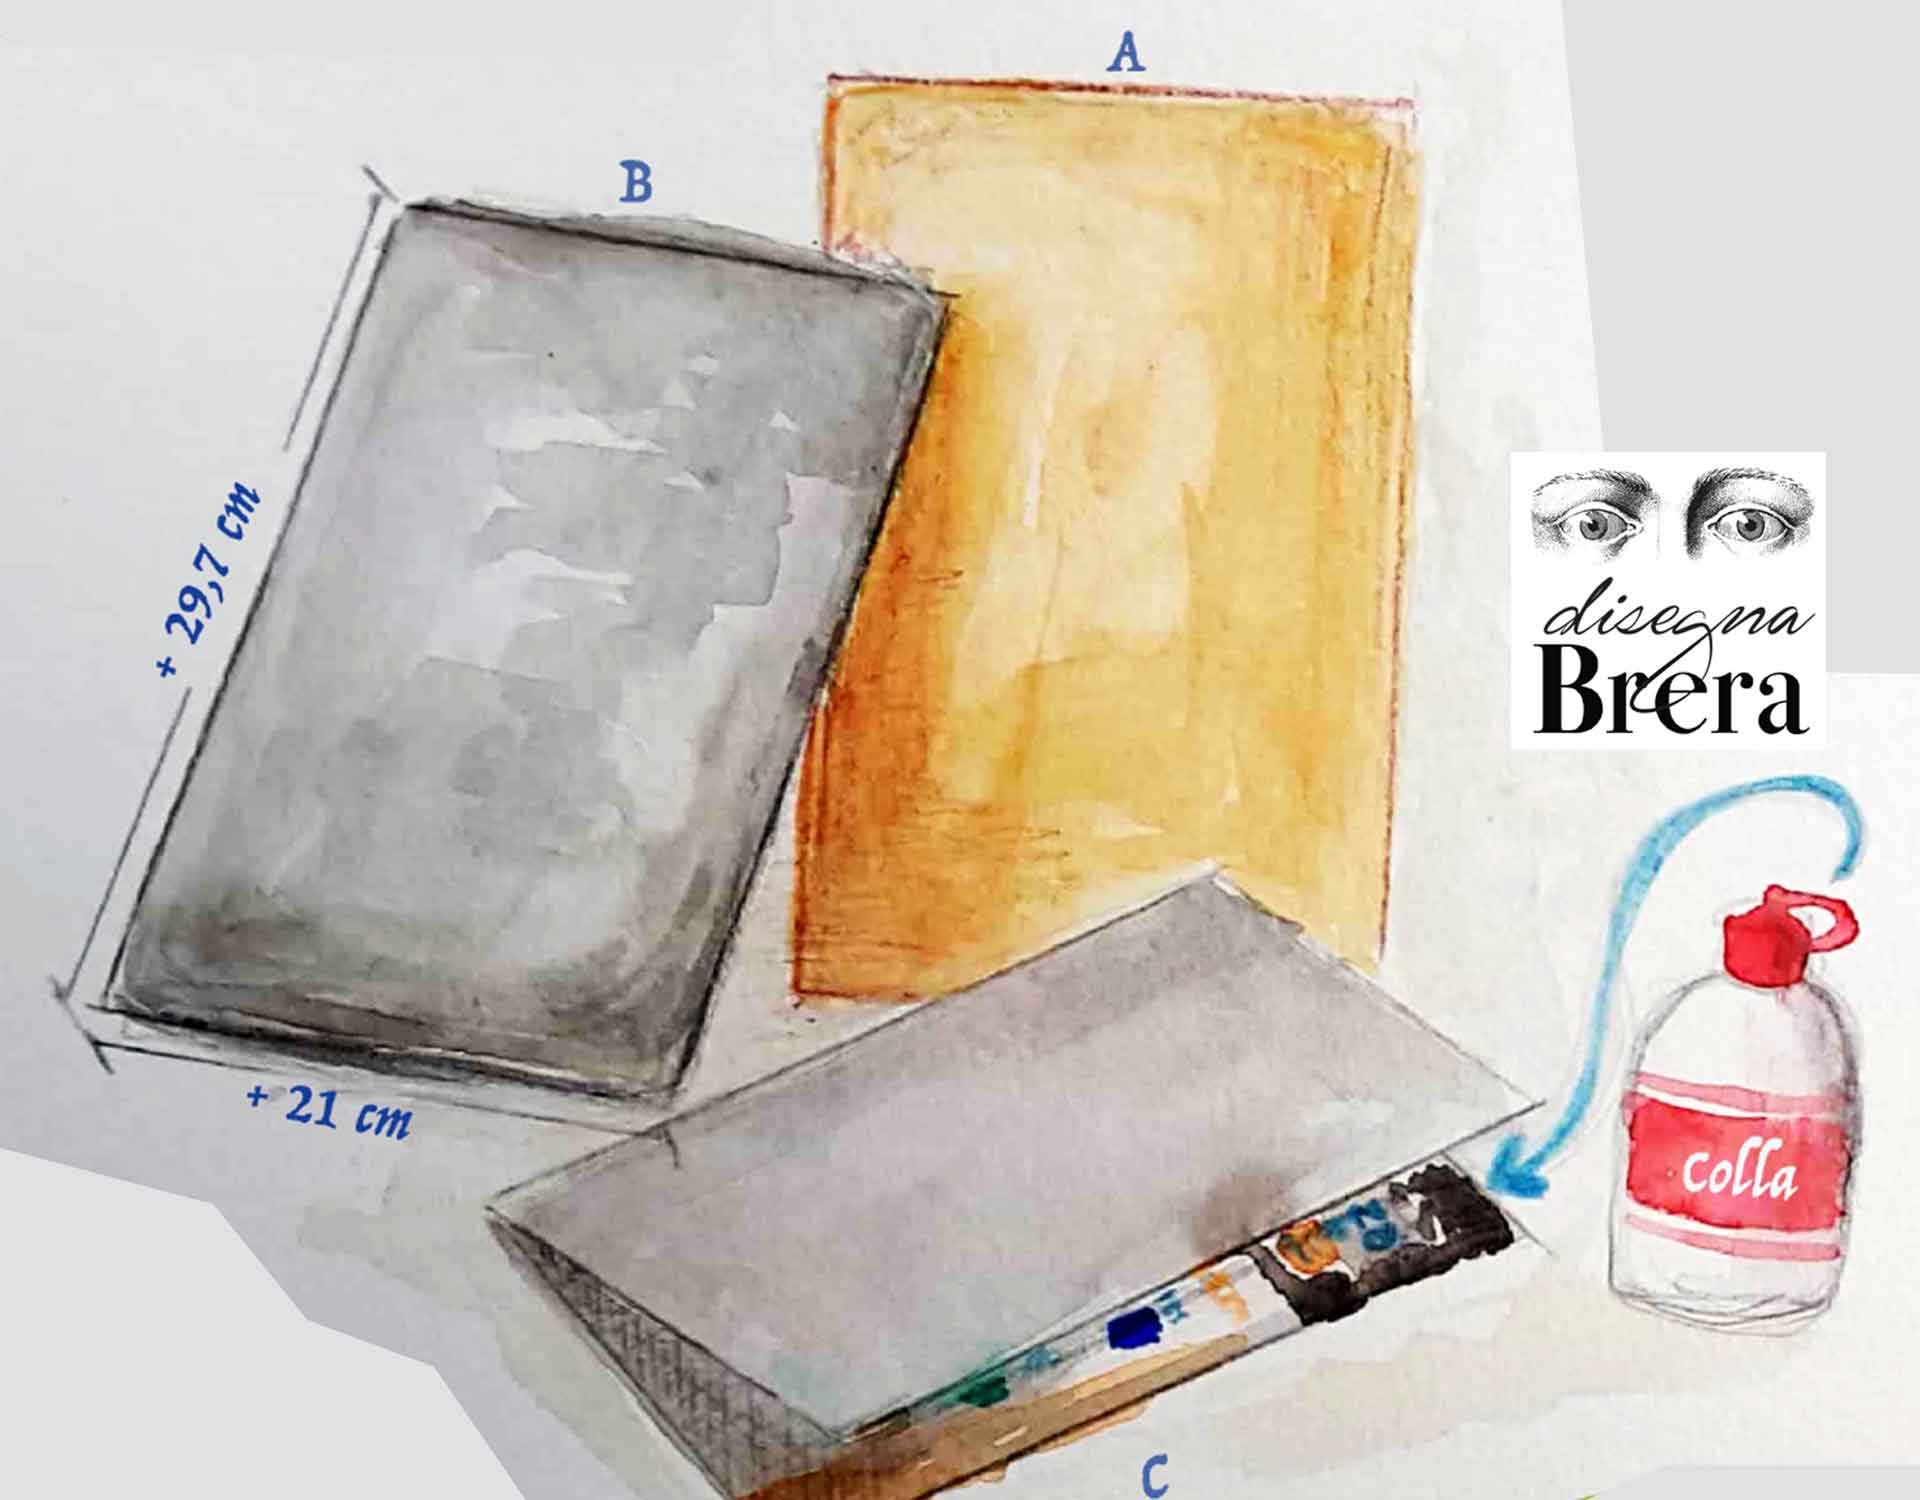 https://pinacotecabrera.org/wp-content/uploads/2020/06/Pinacoteca-Brera-come-costruire-un-kit-disegno-1.jpg